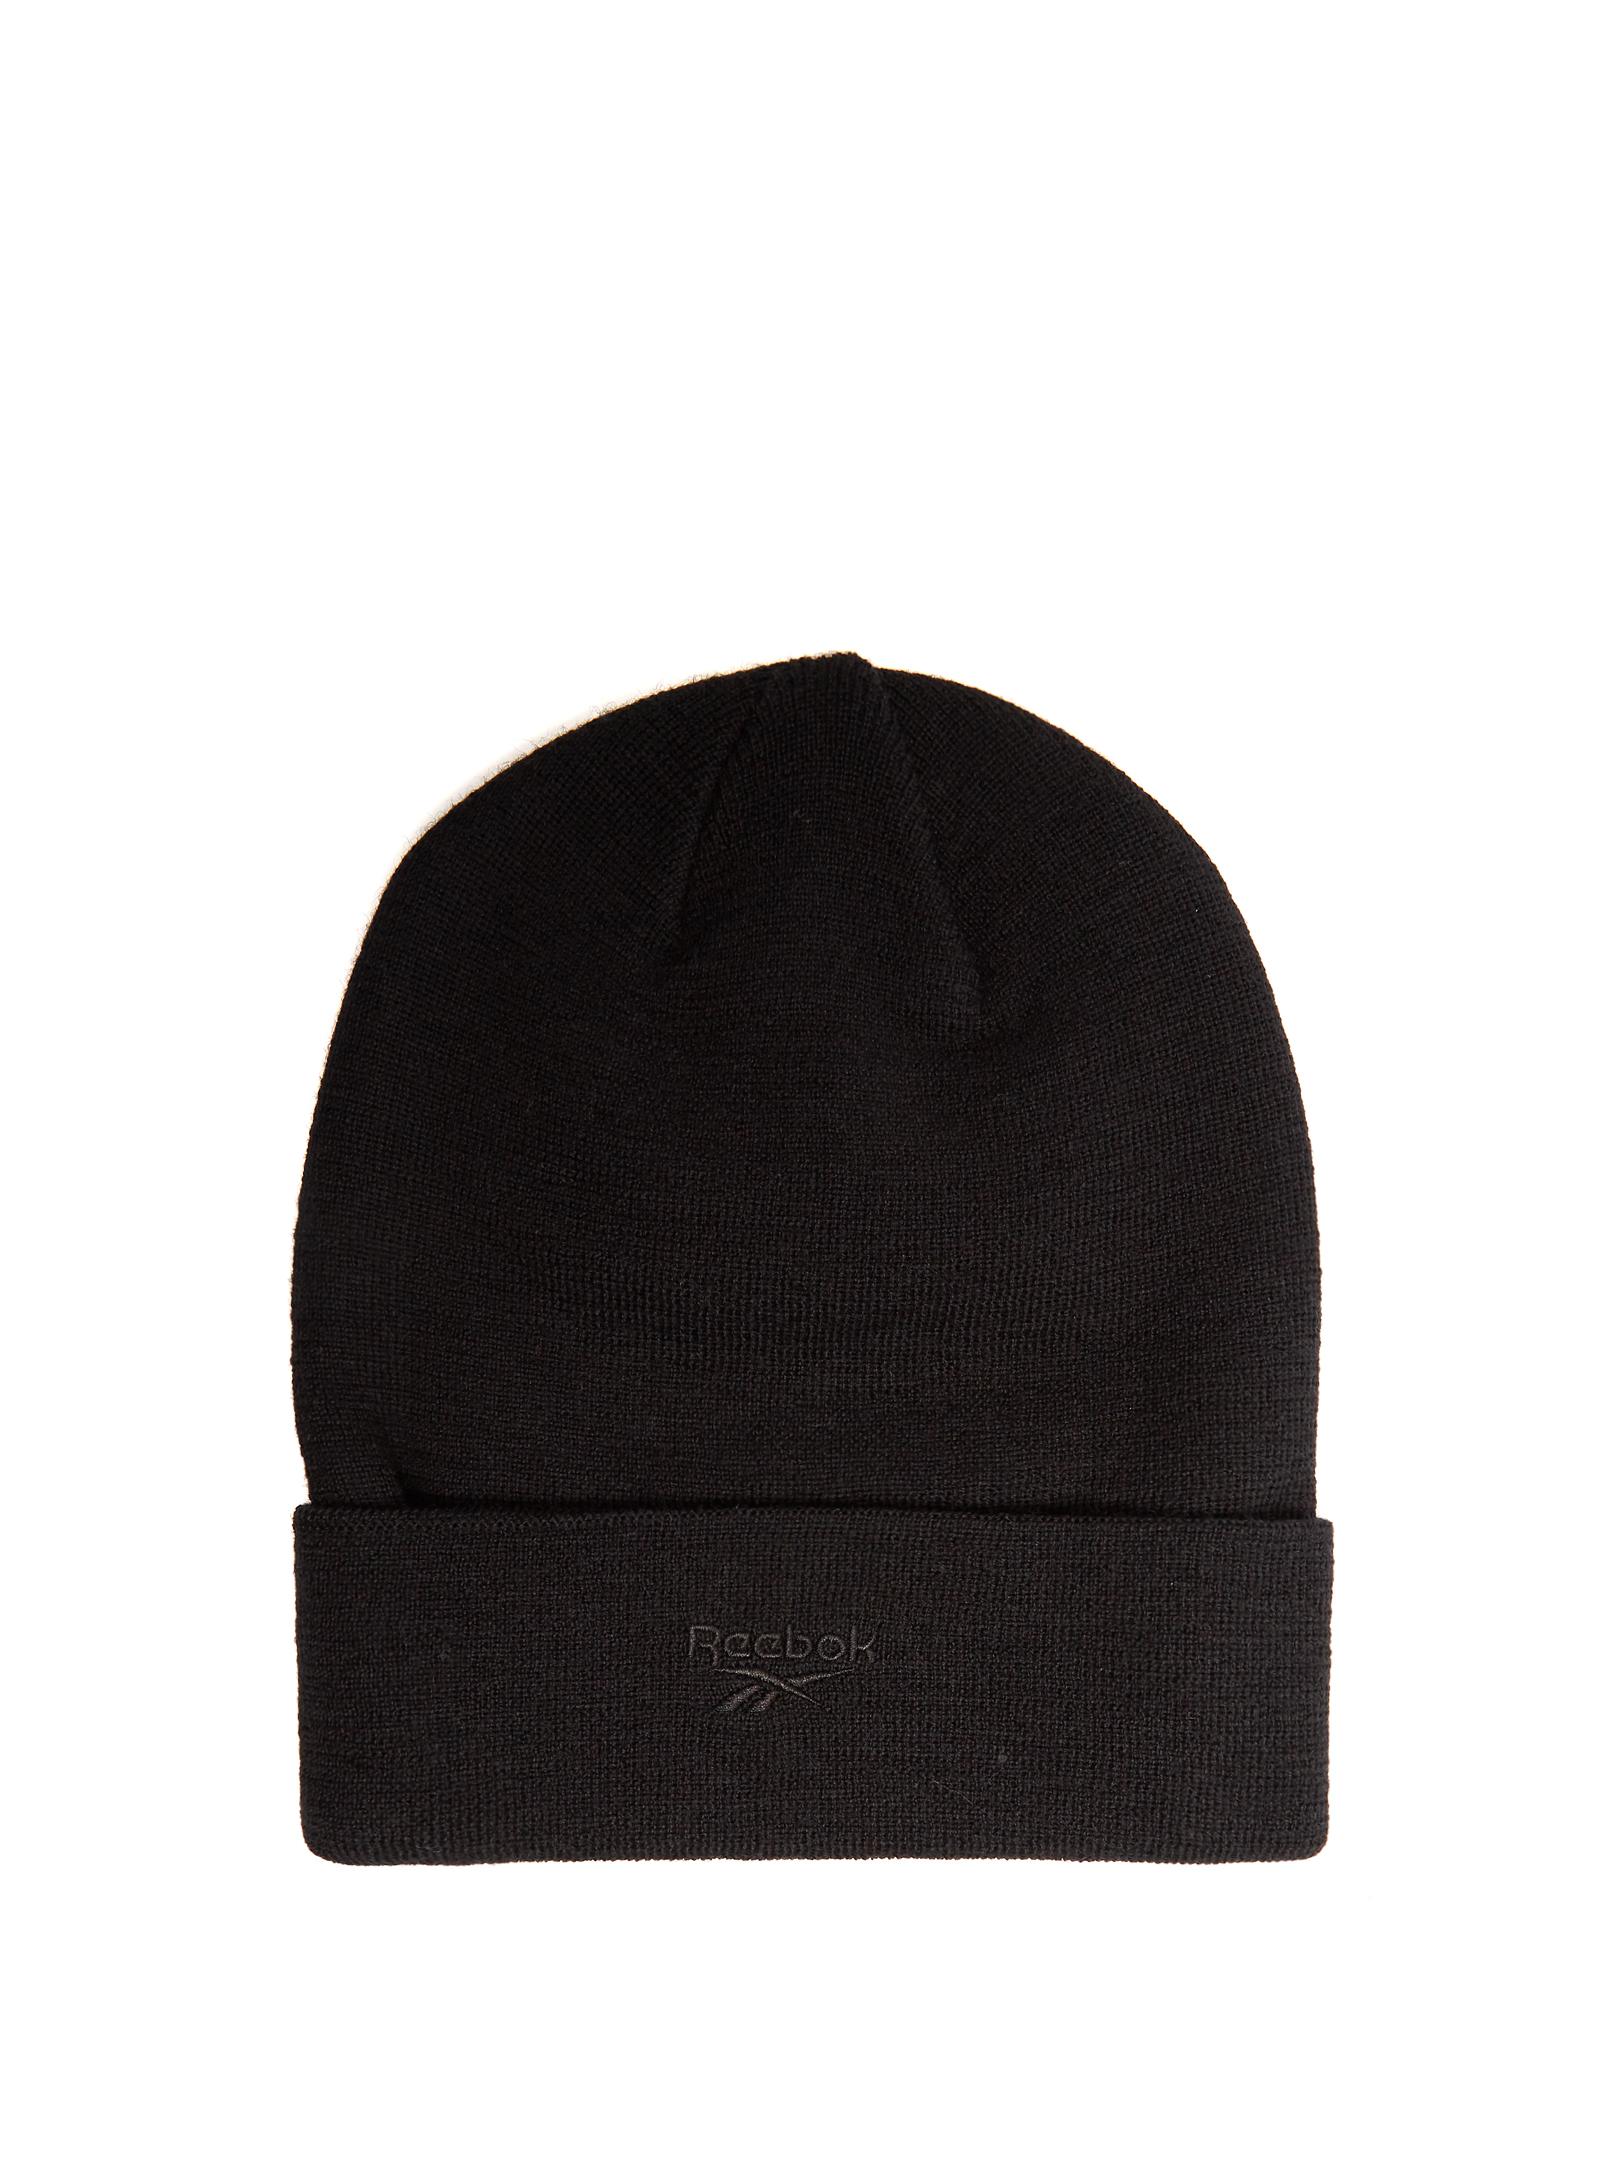 Vetements X Reebok Wool Beanie Hat in Black for Men | Lyst